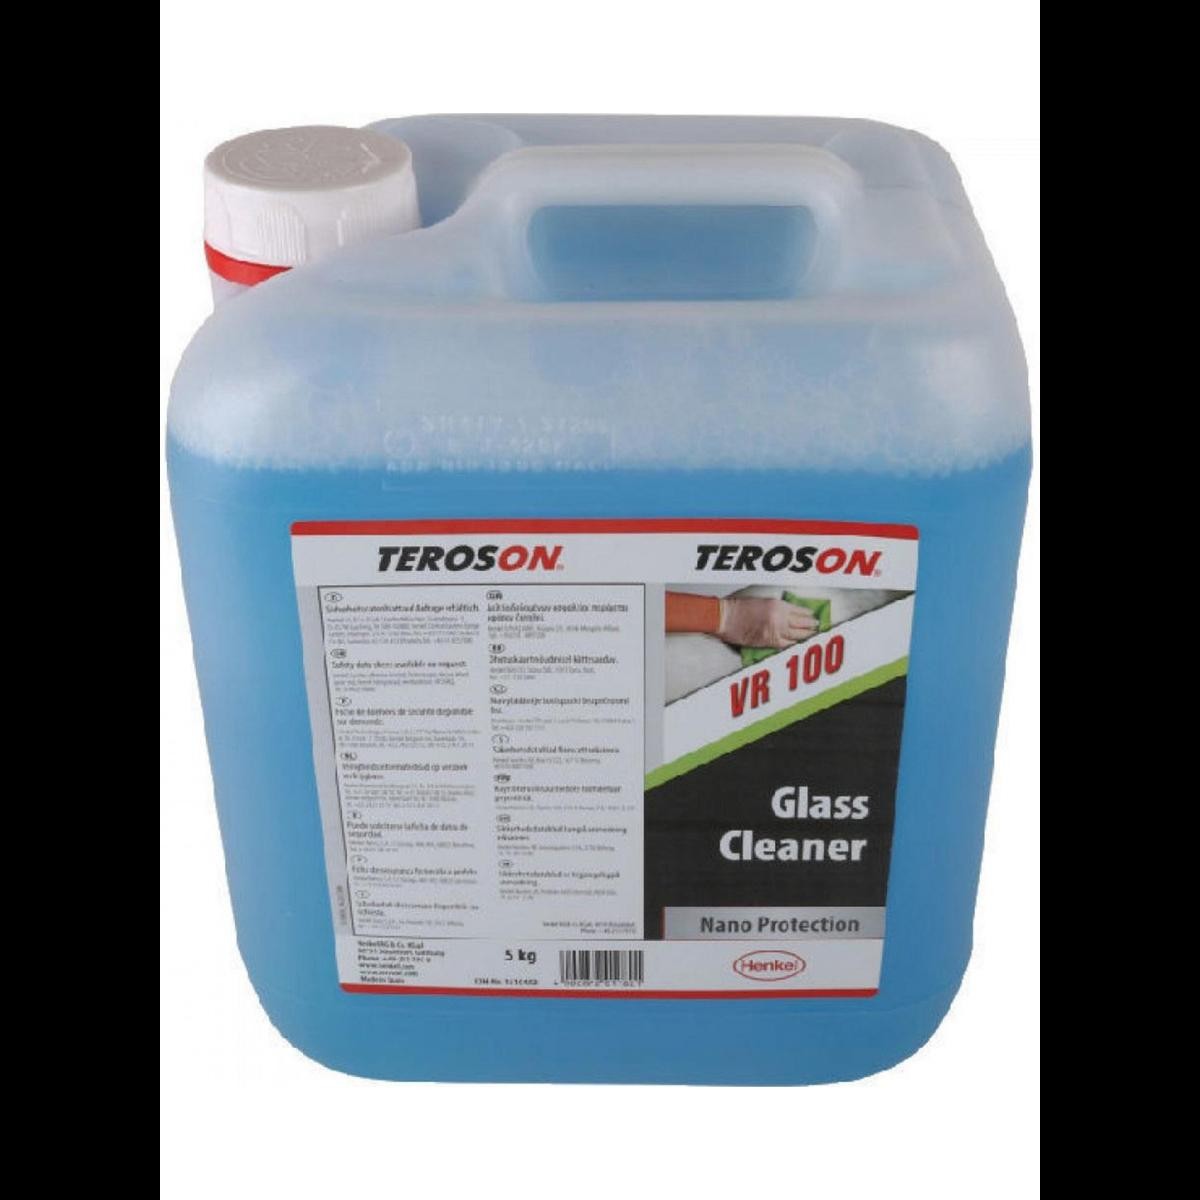 TEROSON Glass cleaner VR 100 1510450